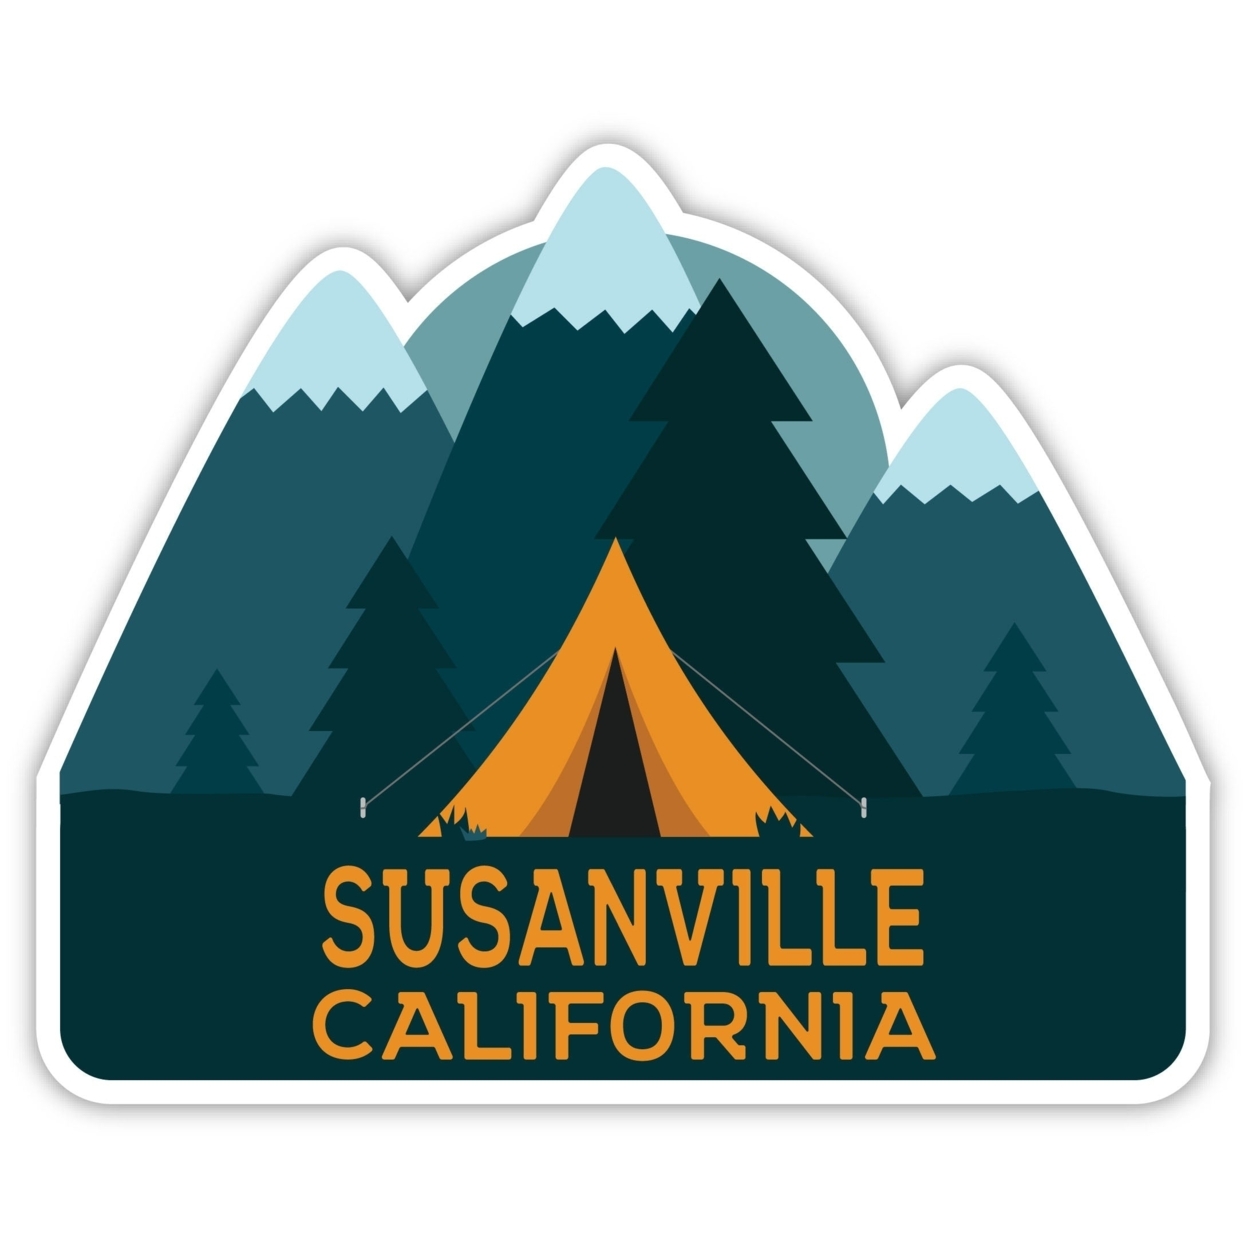 Susanville California Souvenir Decorative Stickers (Choose Theme And Size) - Single Unit, 2-Inch, Tent